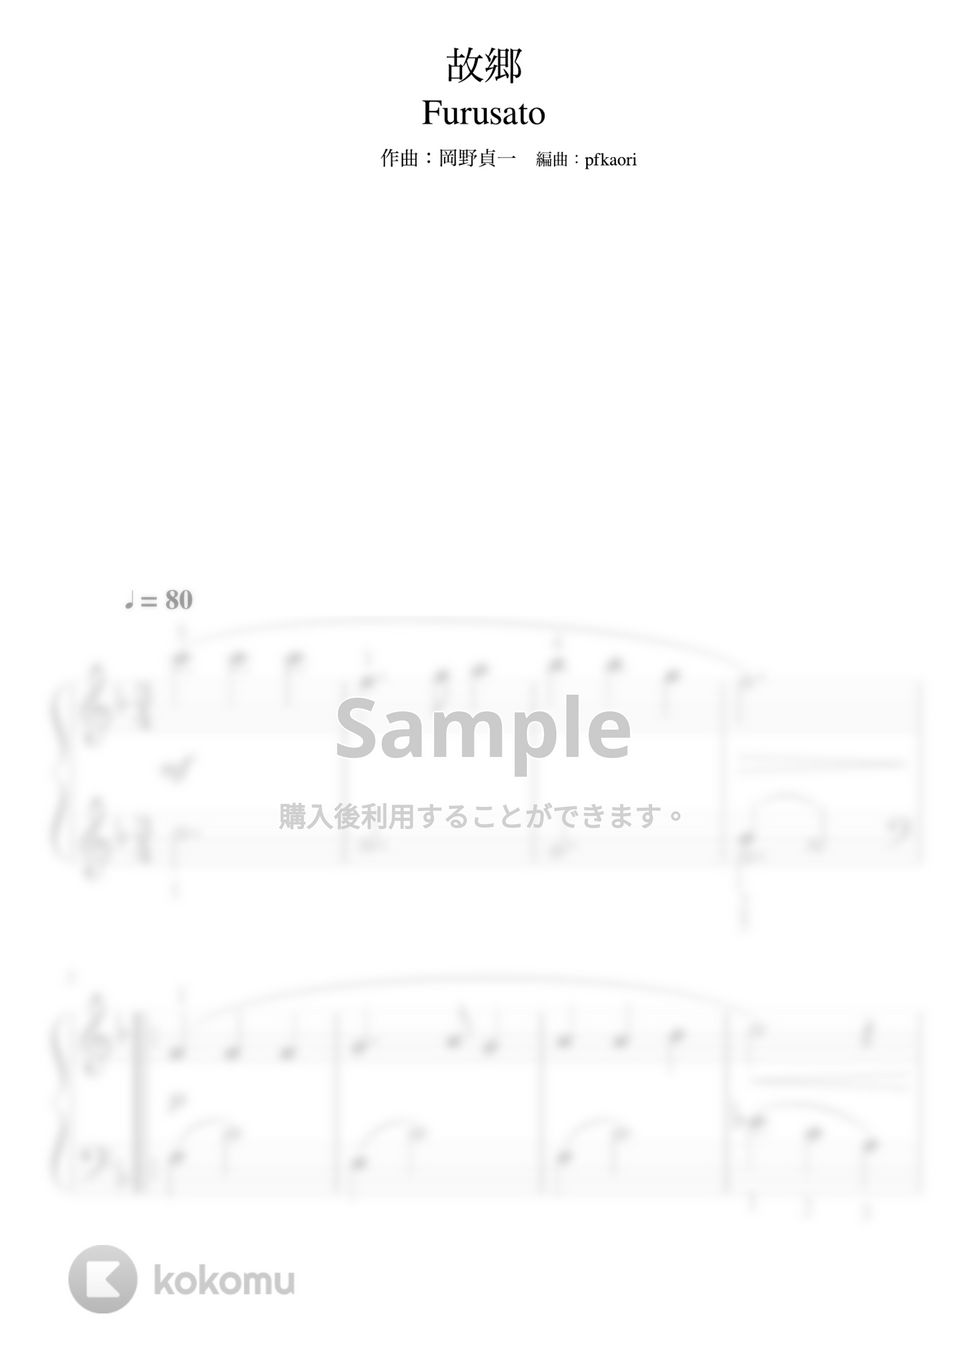 岡野貞一 - 故郷 (Fdur・ピアノソロ初級・指番号付き) by pfkaori